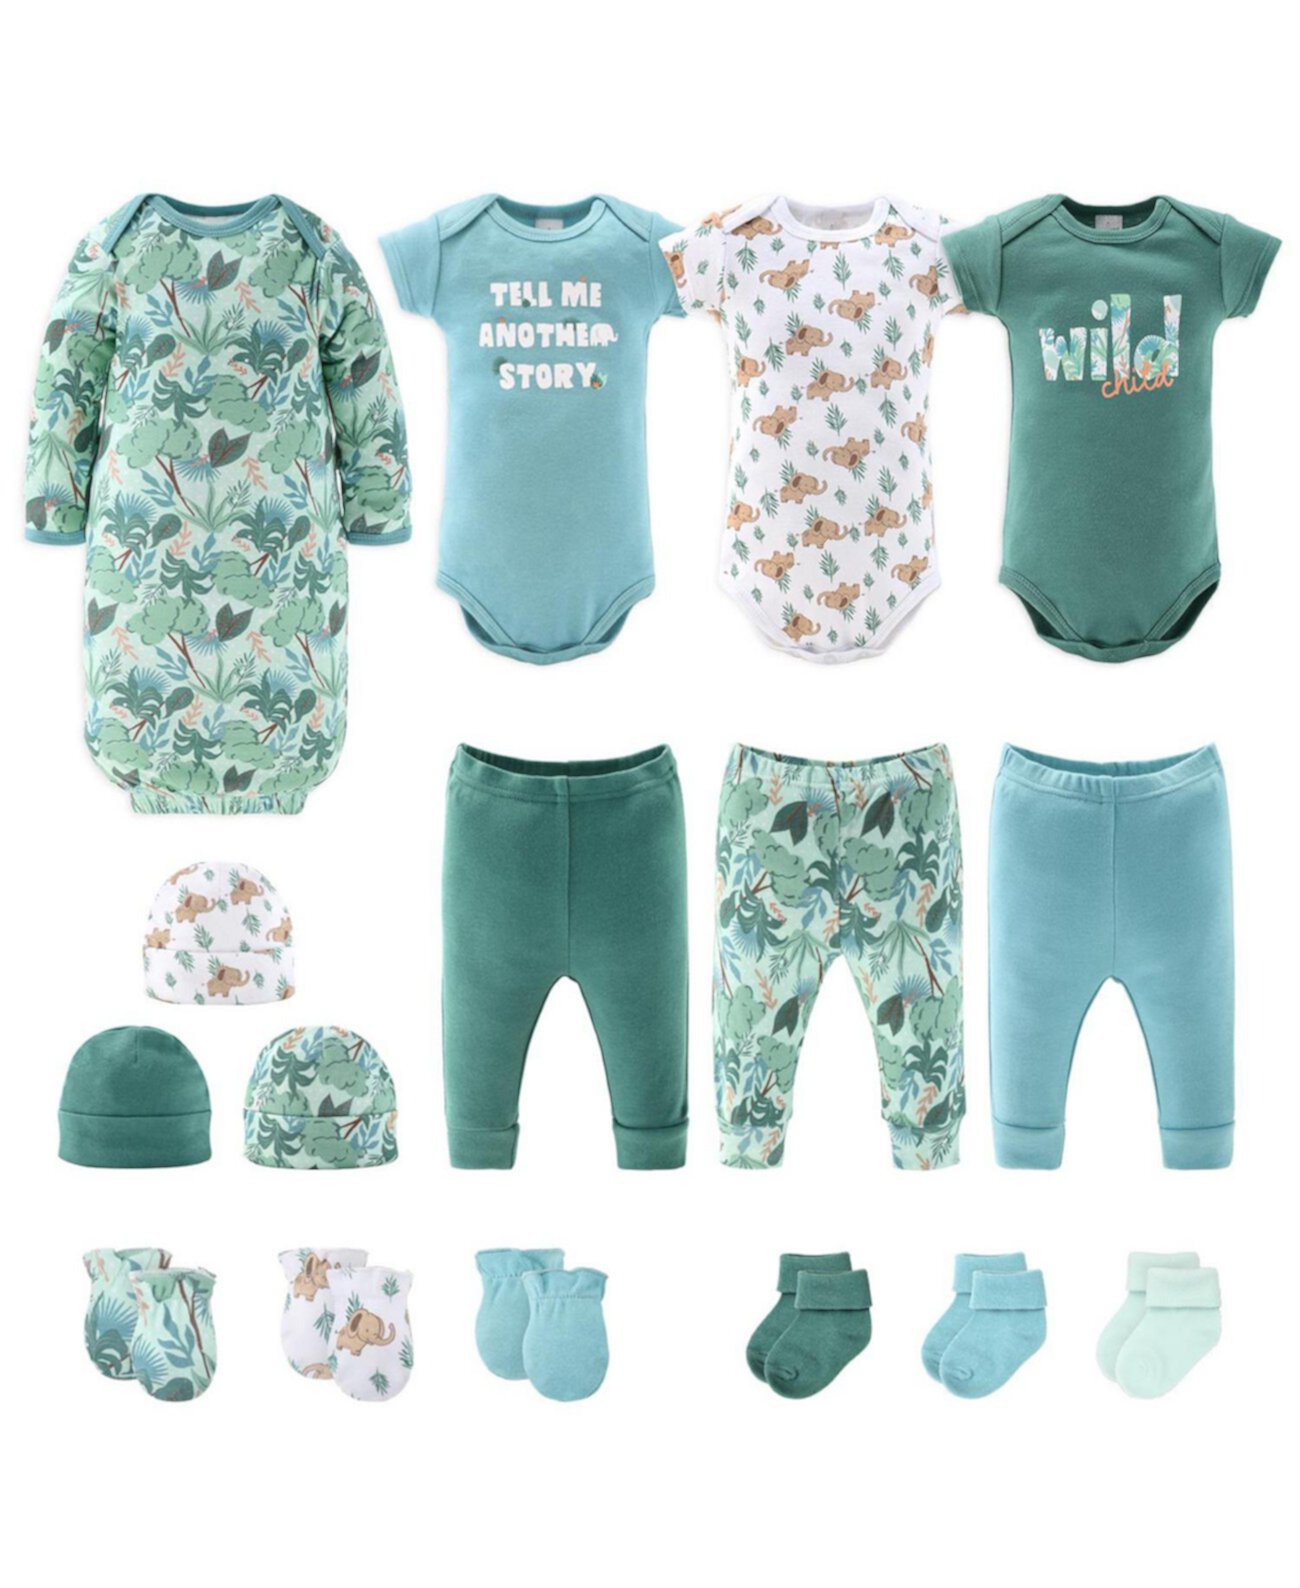 Подарочный набор Newborn Layette для мальчиков или девочек, сине-зеленые дикие джунгли, 16 основных предметов, The Peanutshell